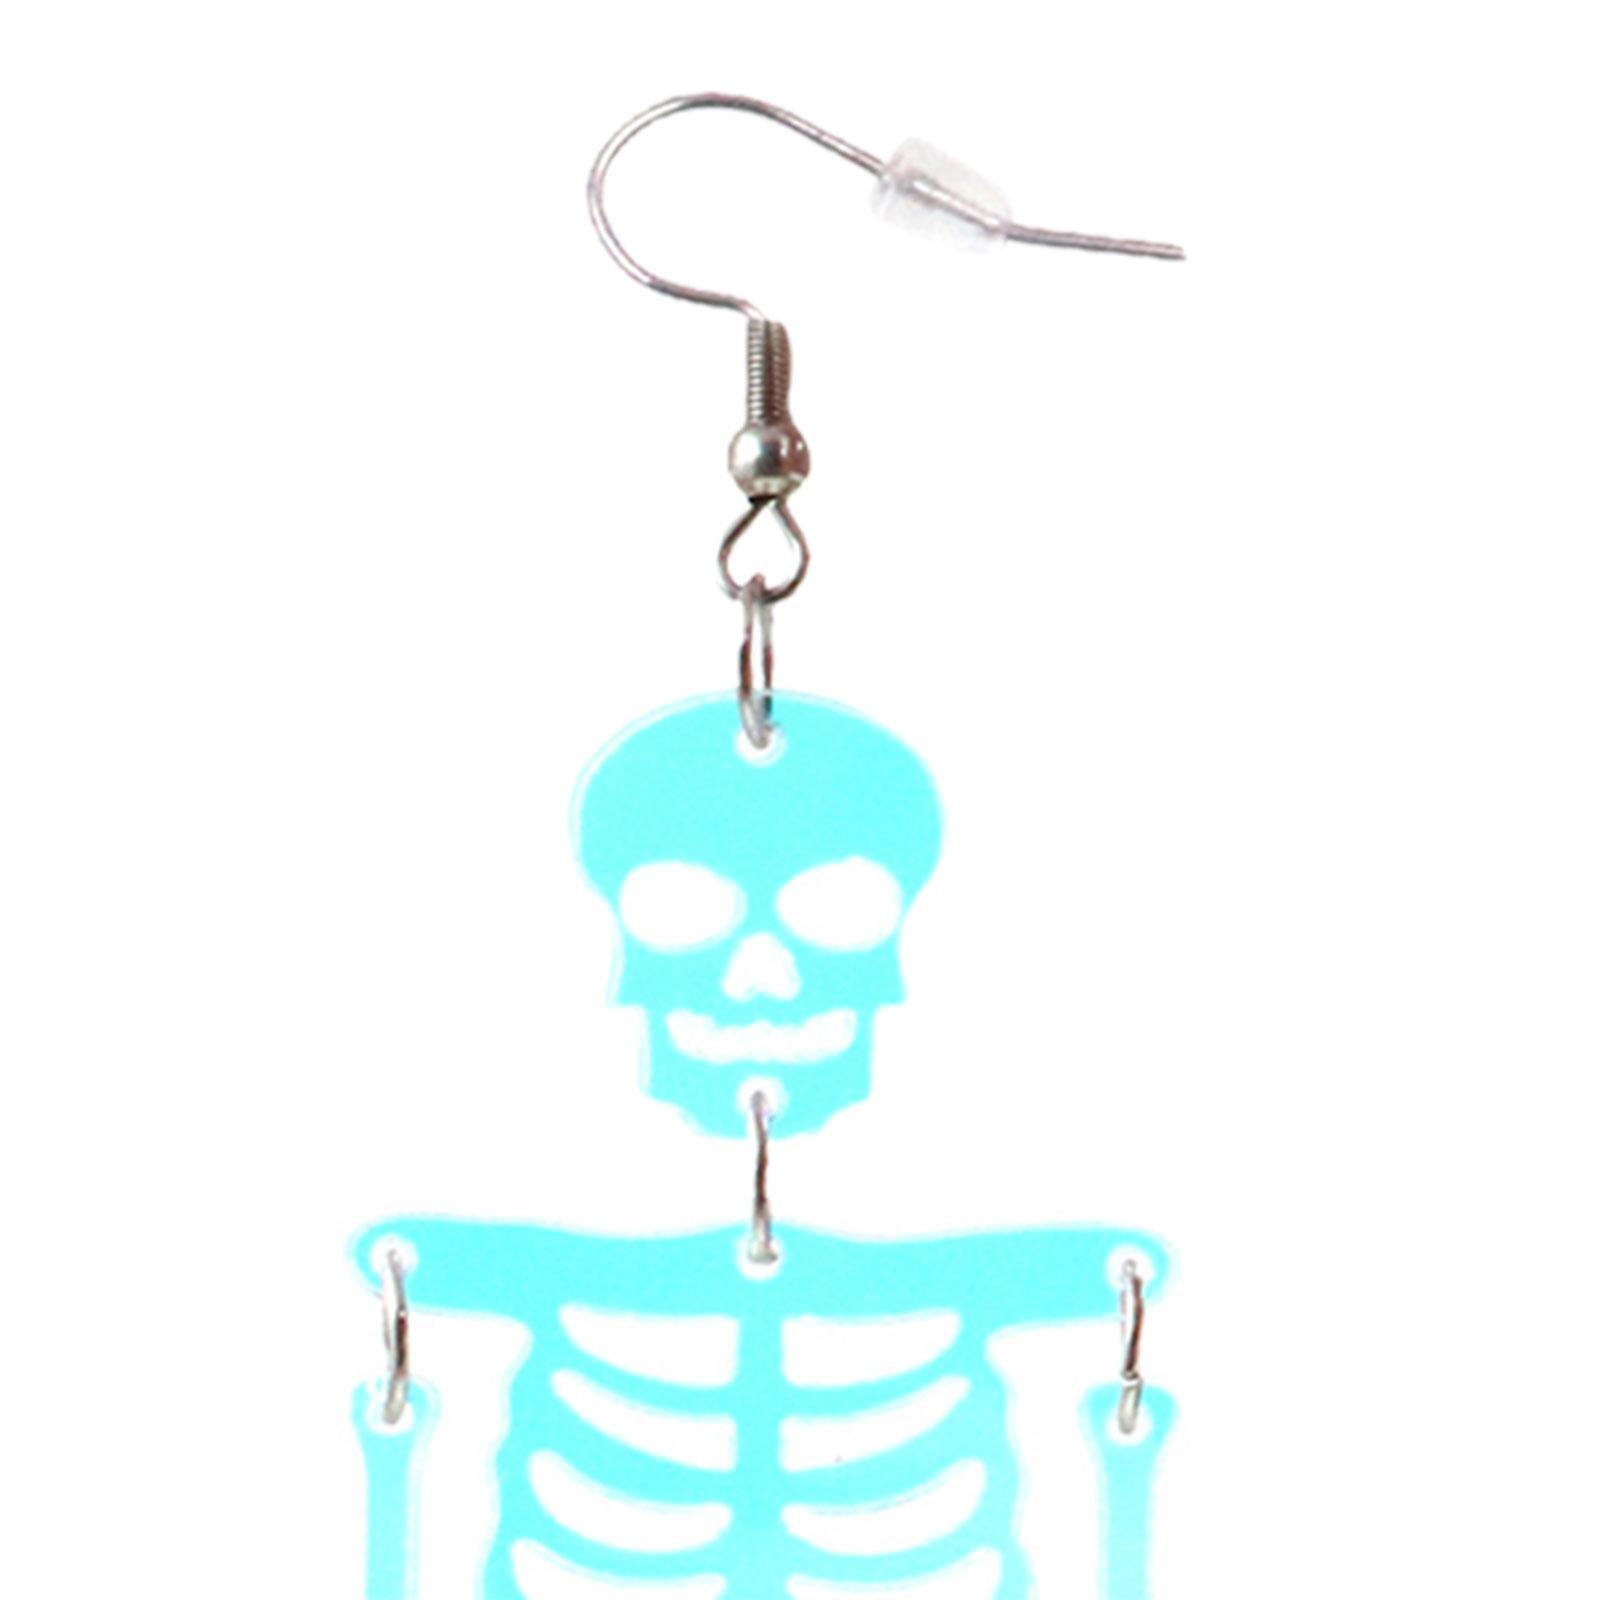 Halloween Skeleton Earrings Spooky Earrings Decor Costume Accessories Dress up Trendy Fashion Punk Dangle Earrings for Daily Wear Club